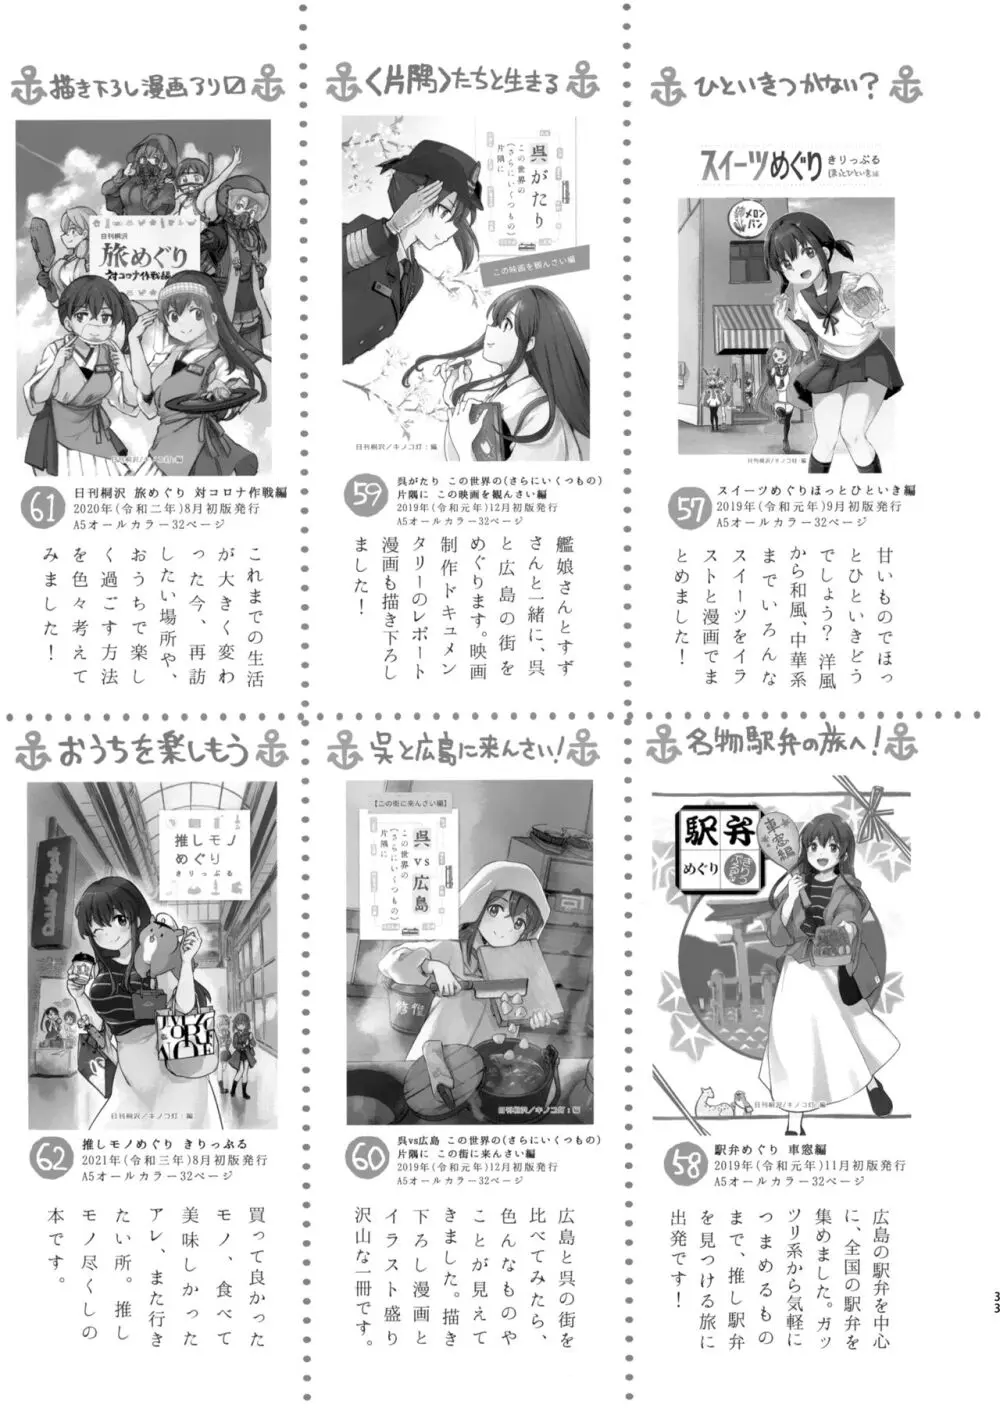 迅鯨ちゃんと 蜜月温泉 旅の宿 - page32